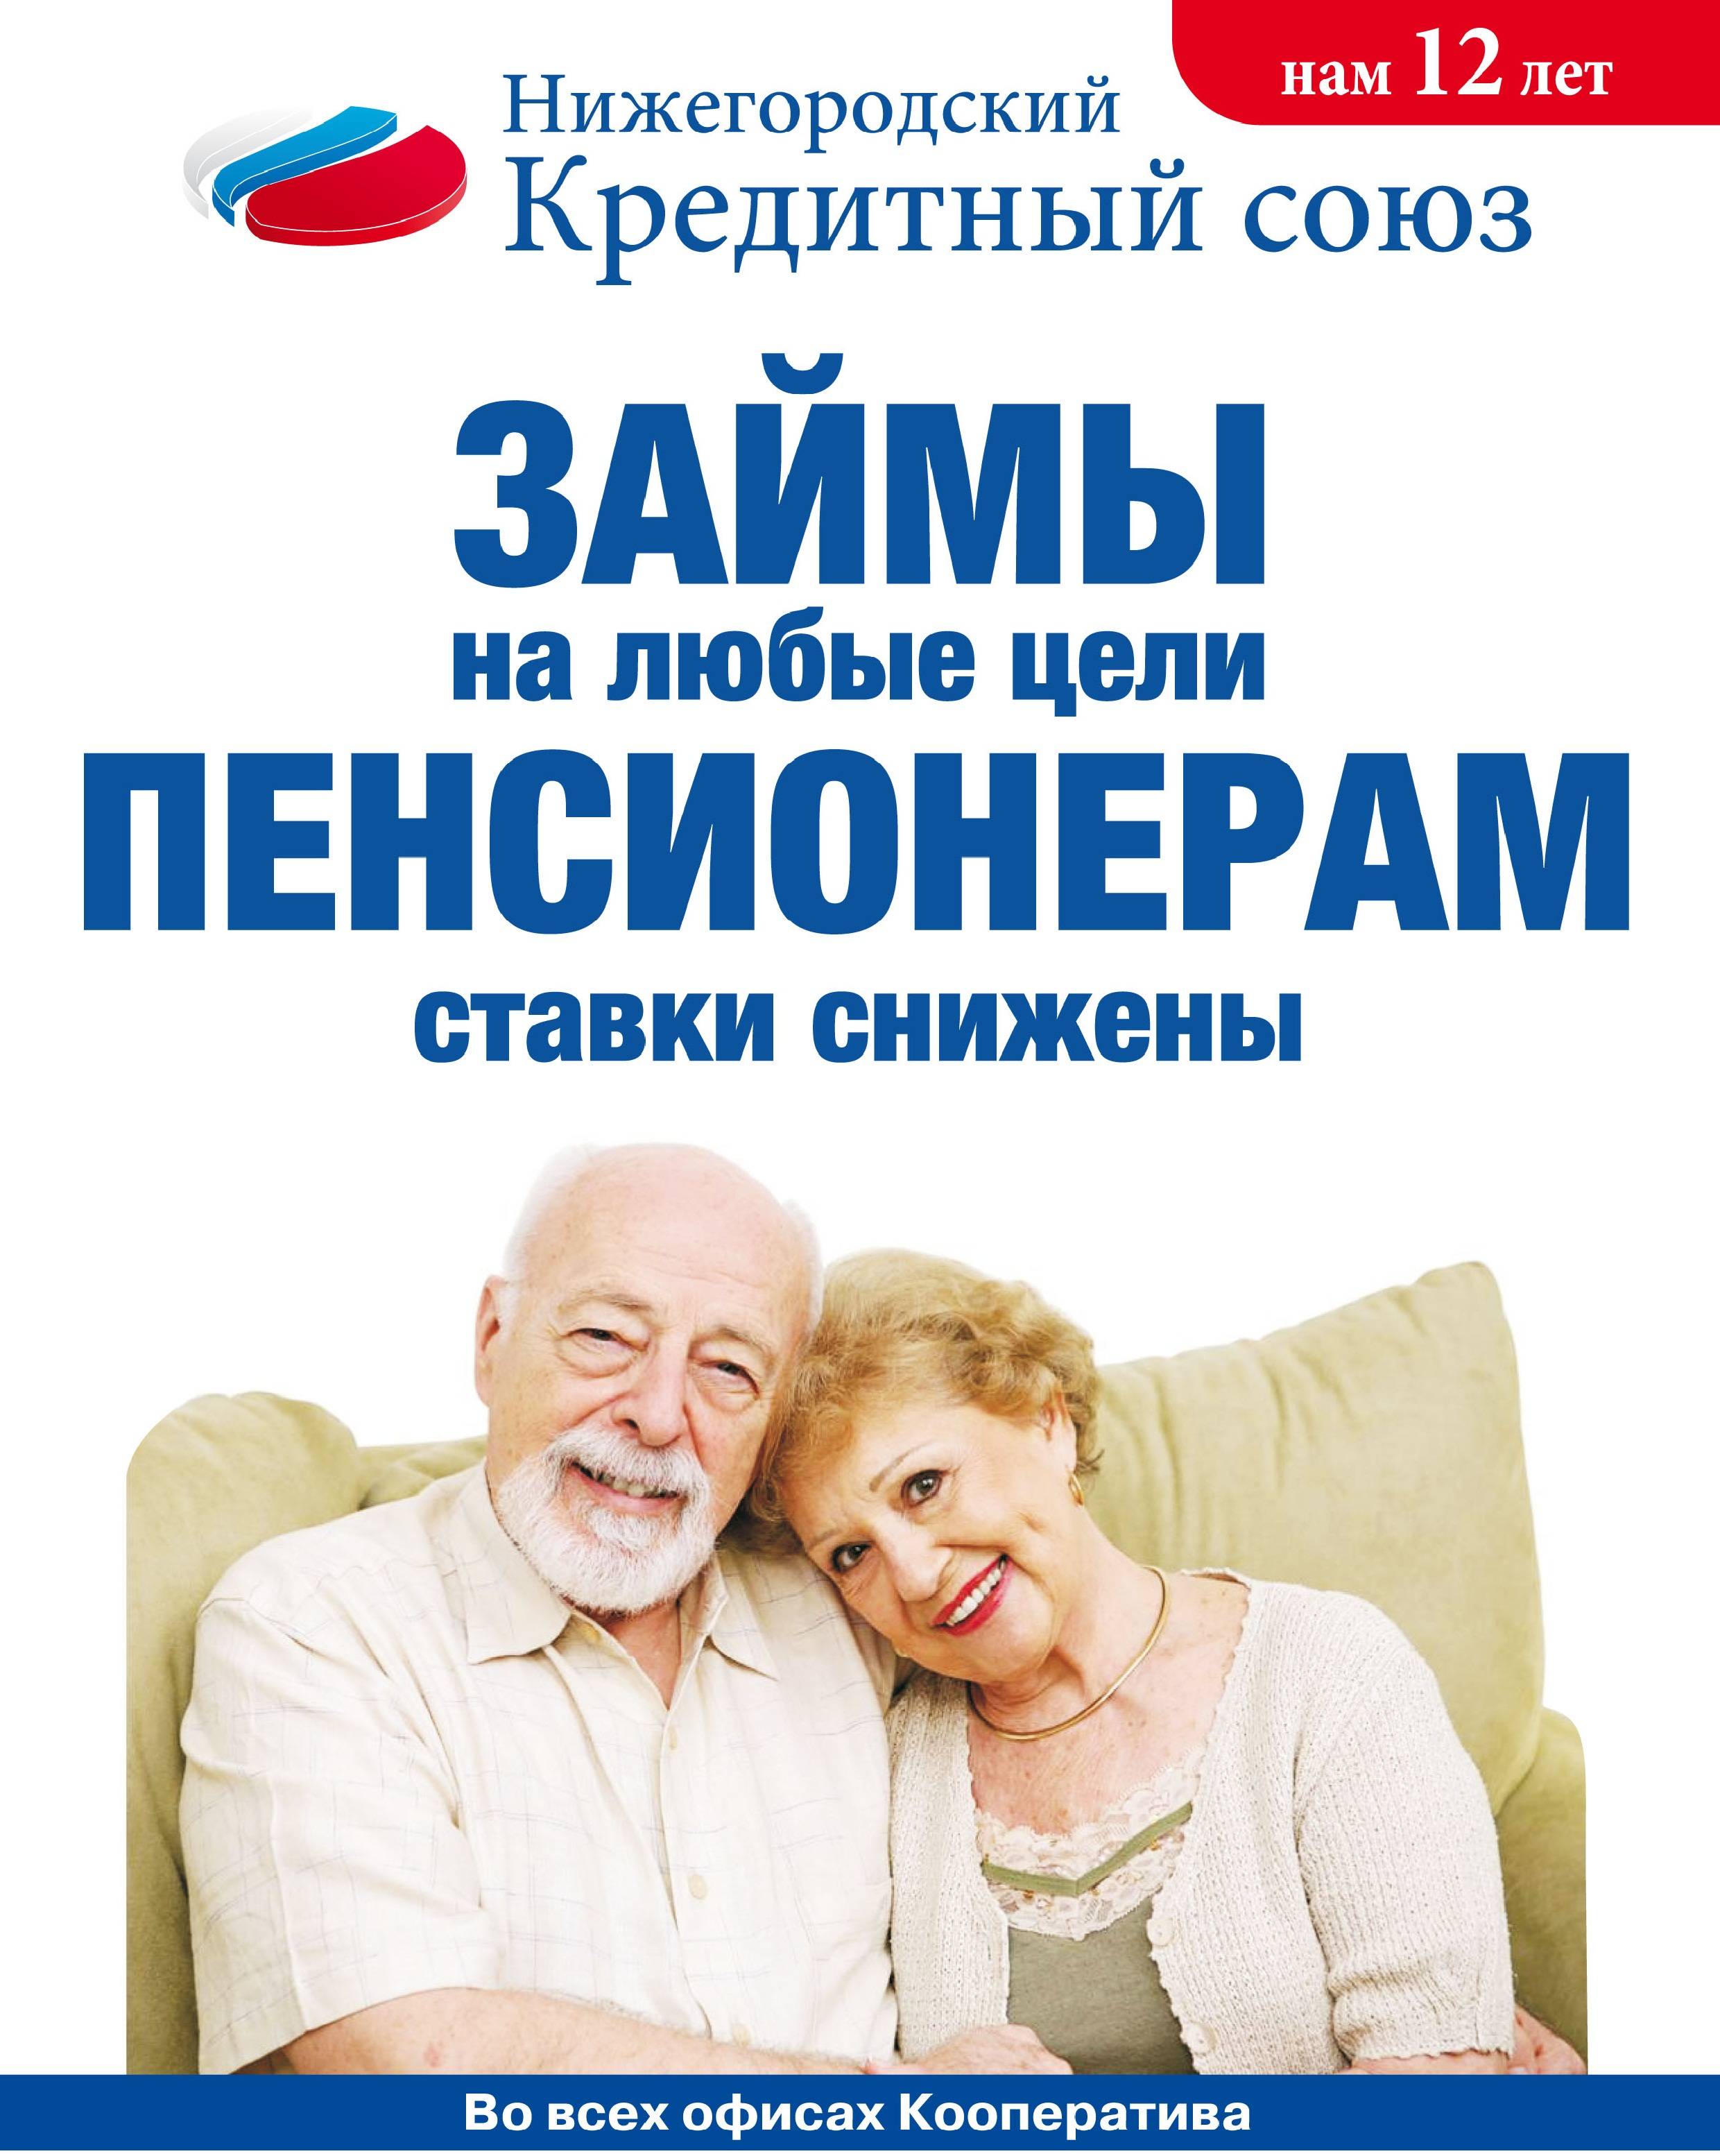 Получить Займы в Ижевске для пенсионеров РФ на карту